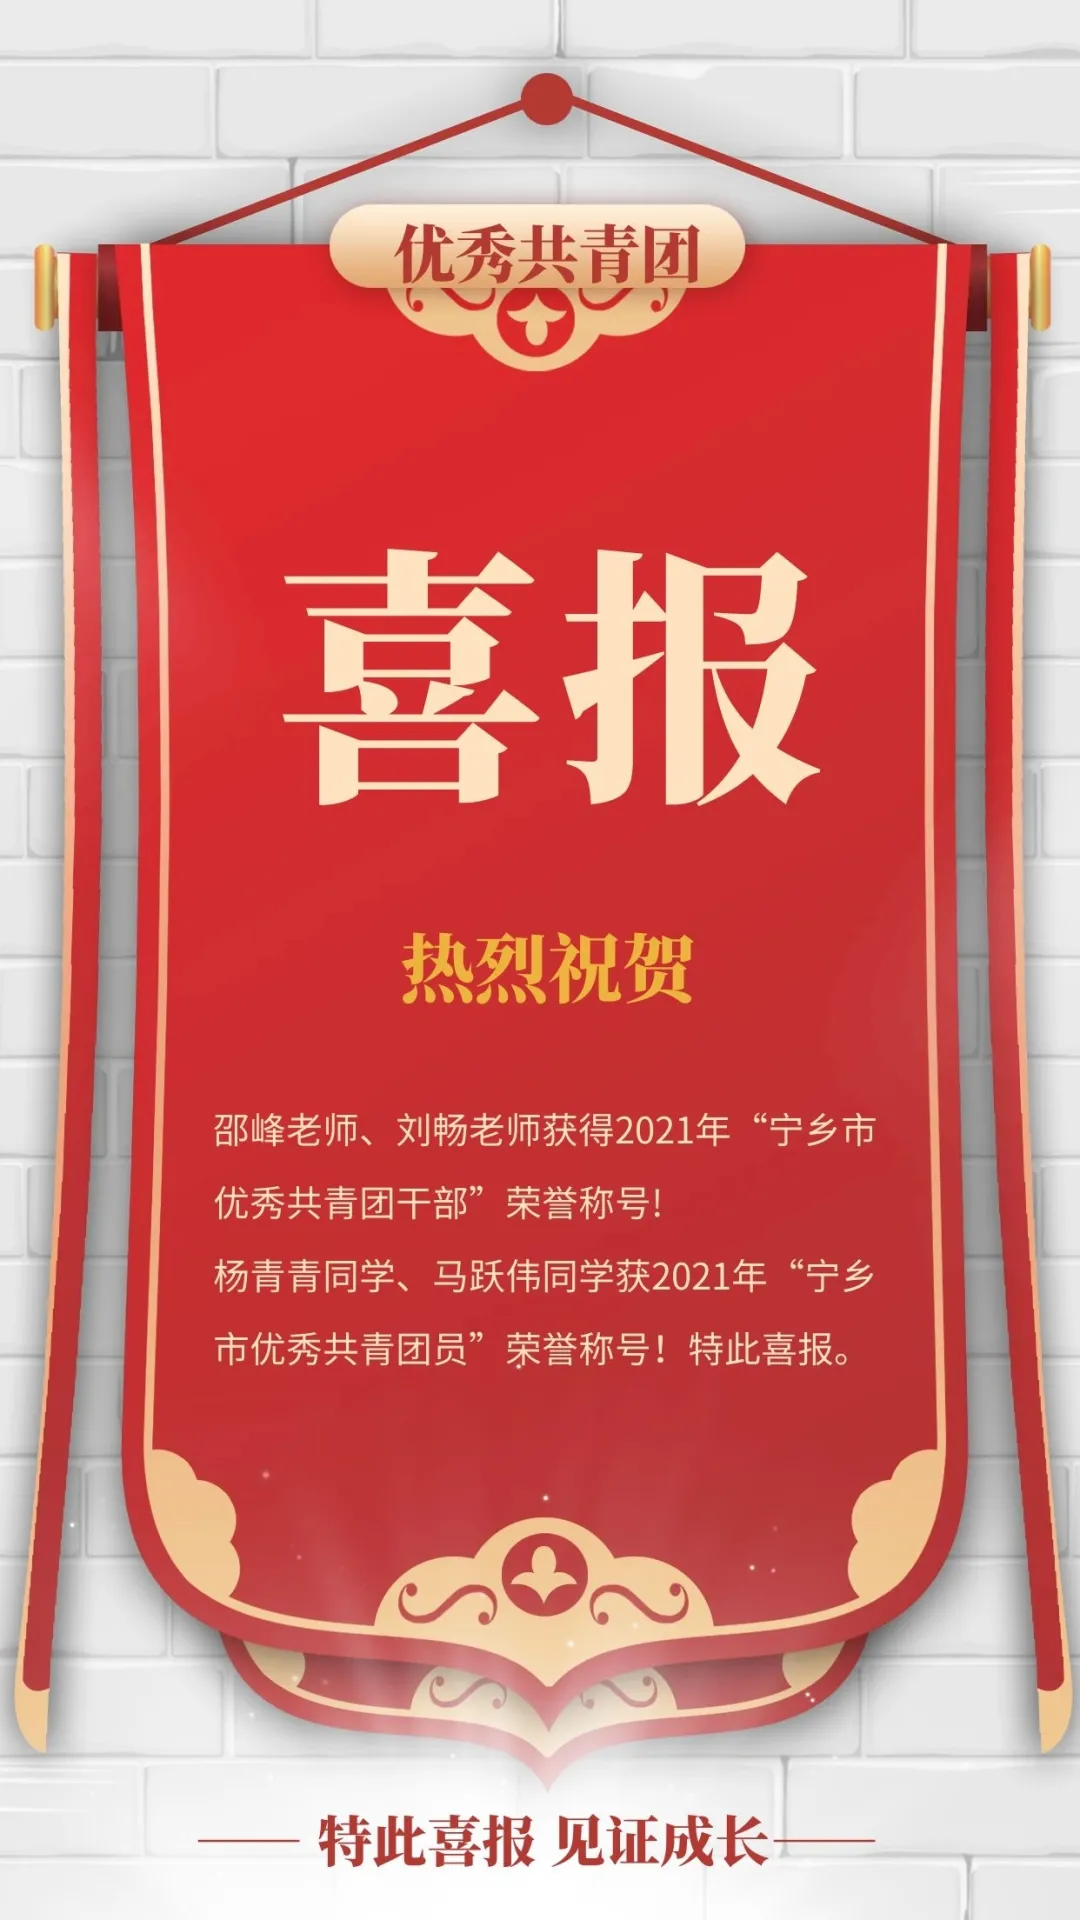 「喜报」祝贺我校邵峰、刘畅老师，杨青青、马跃伟同学获市级荣誉